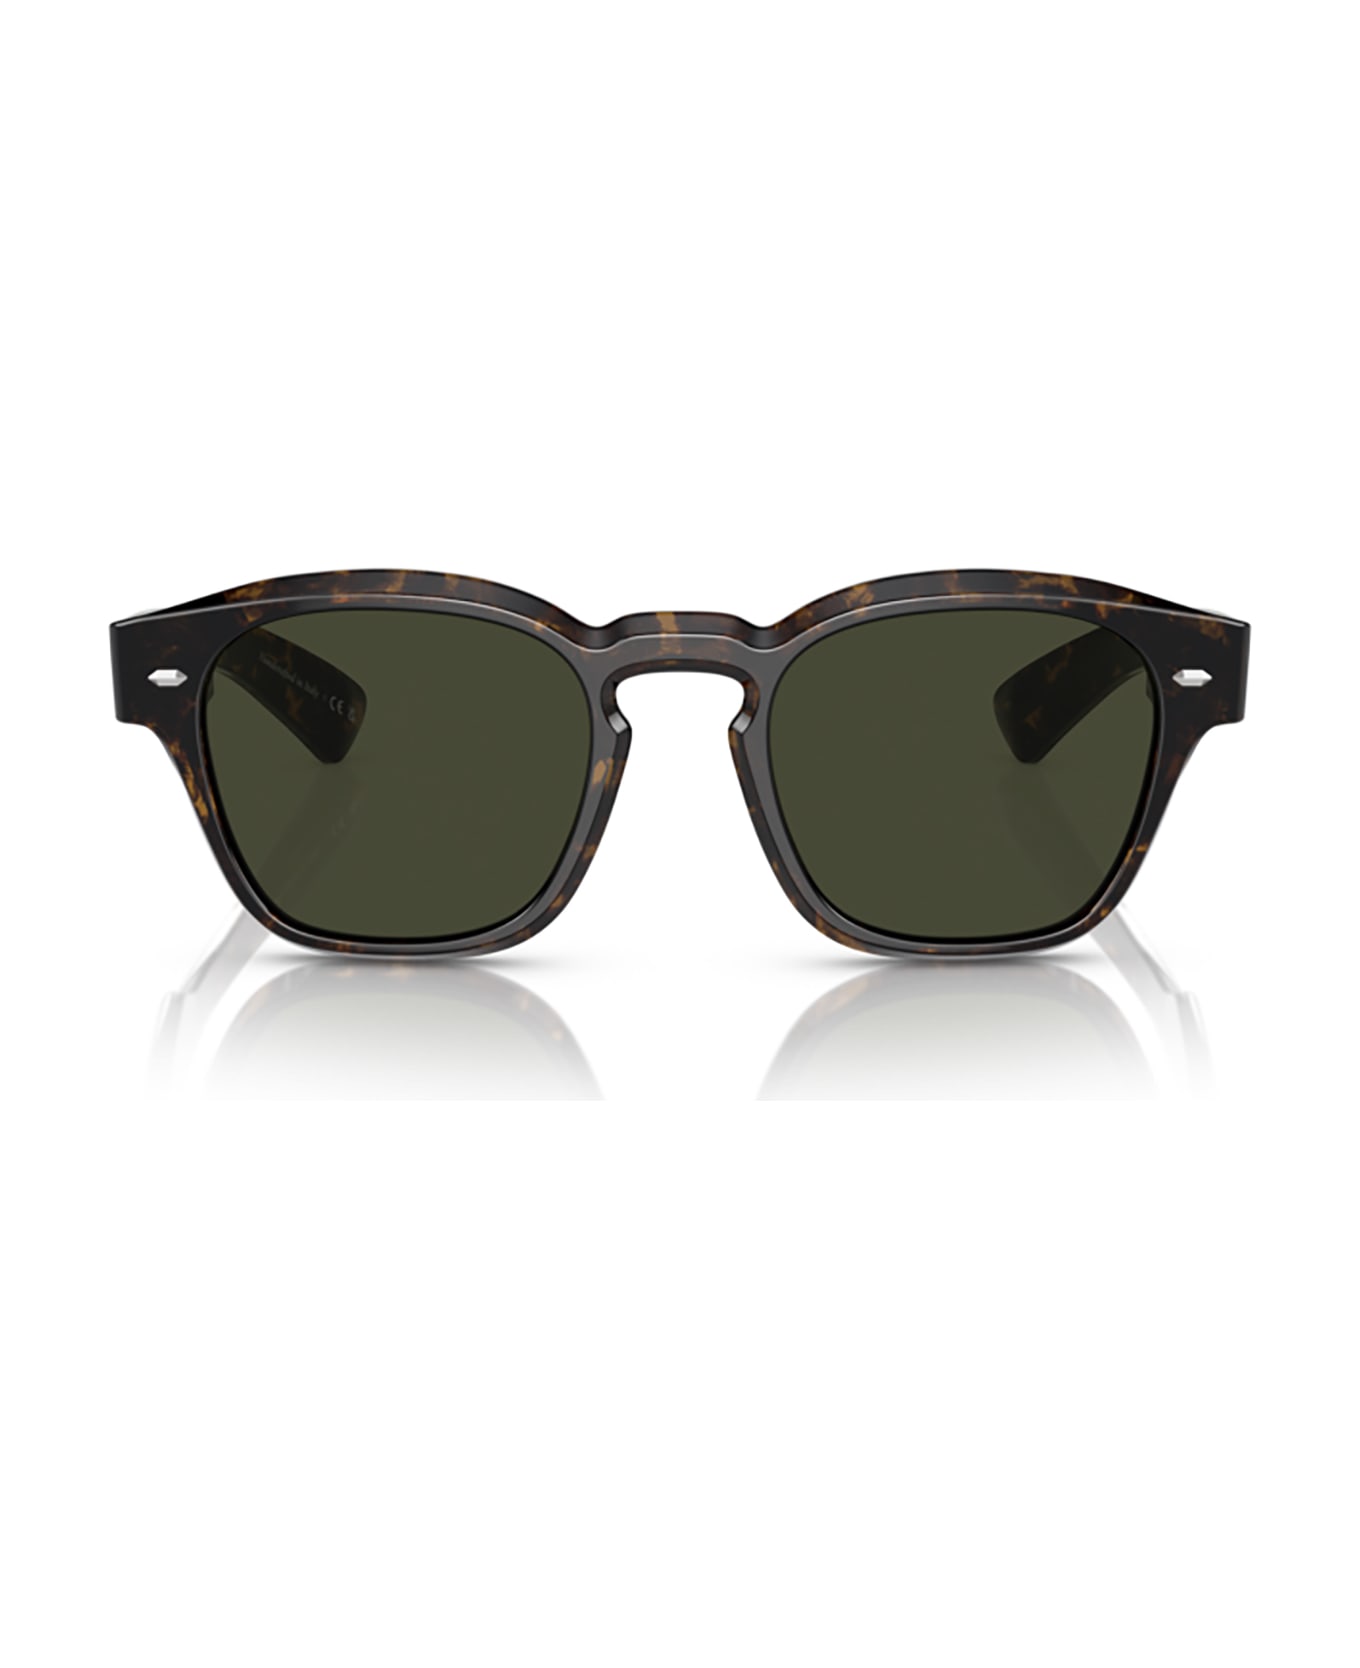 Oliver Peoples Ov5521su Walnut Tortoise Sunglasses - Walnut tortoise サングラス